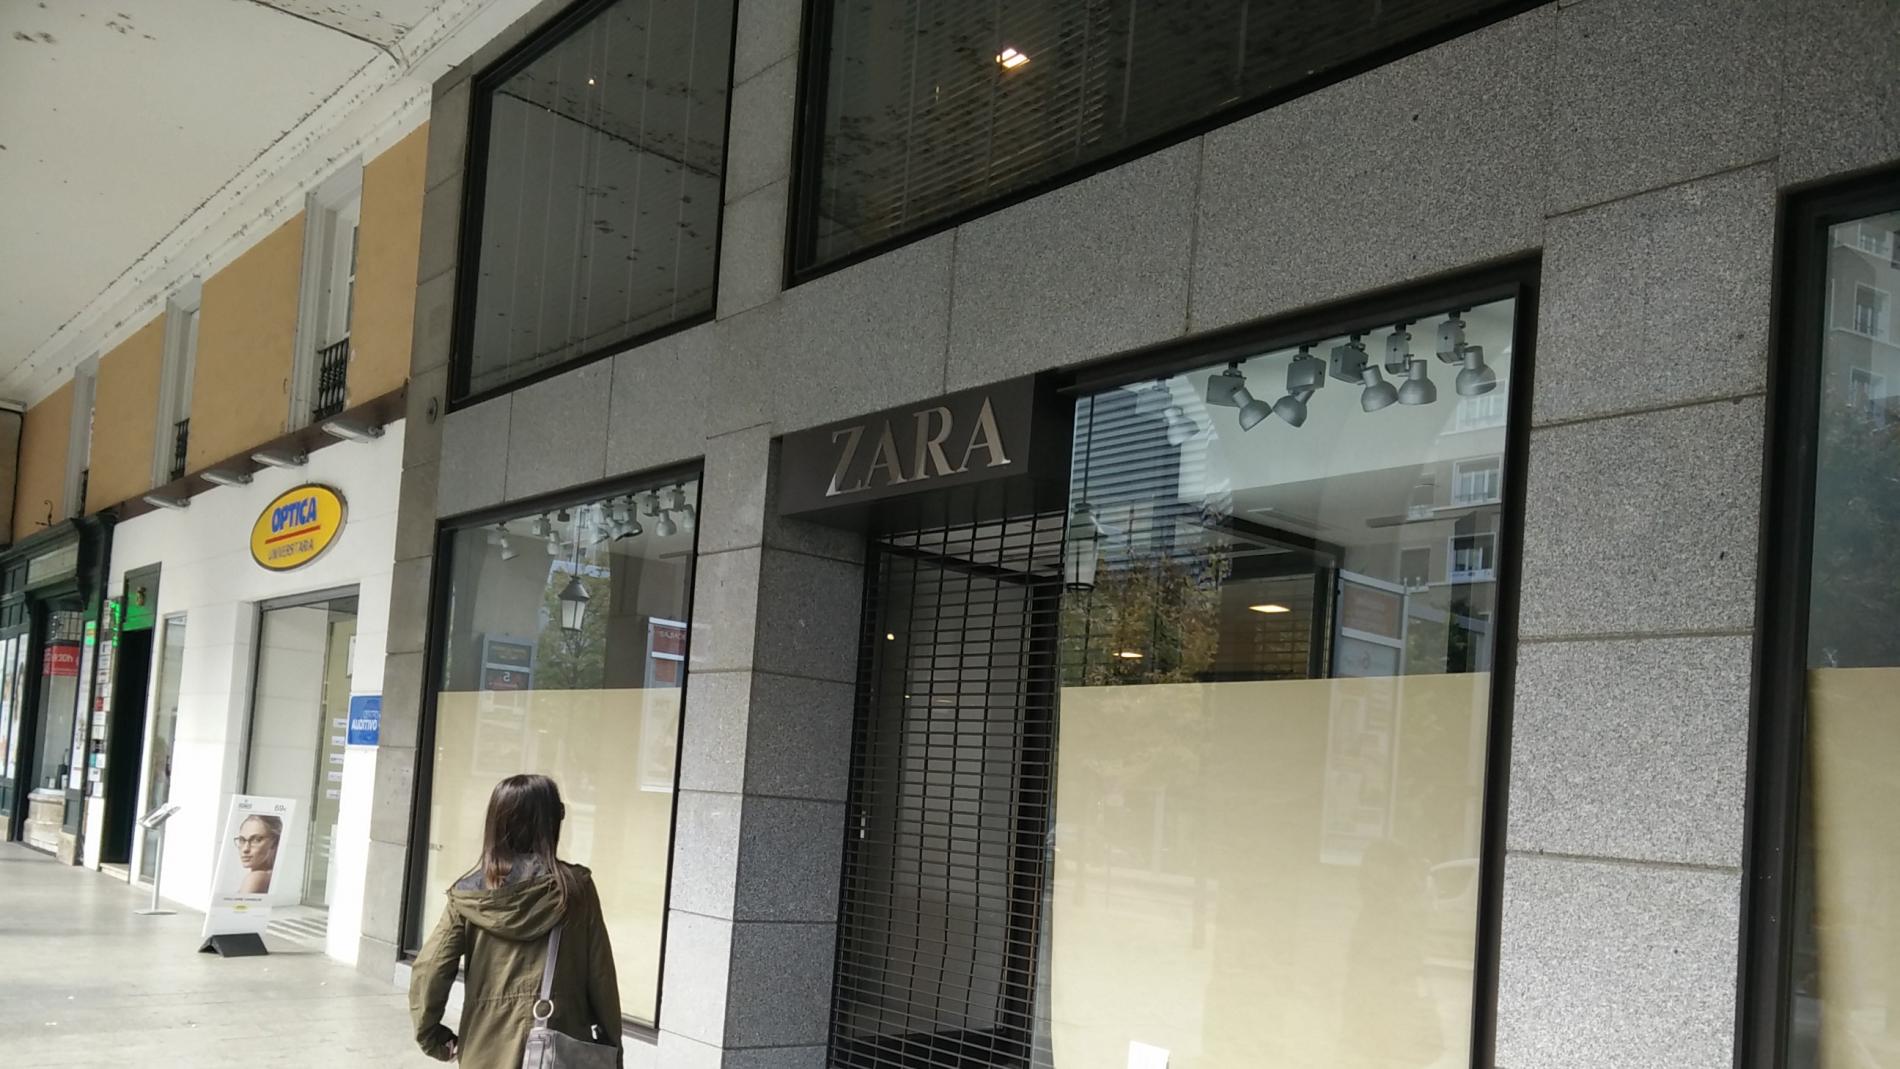 La tienda Zara de Independencia se convertirá en Bershka | Noticias de Zaragoza